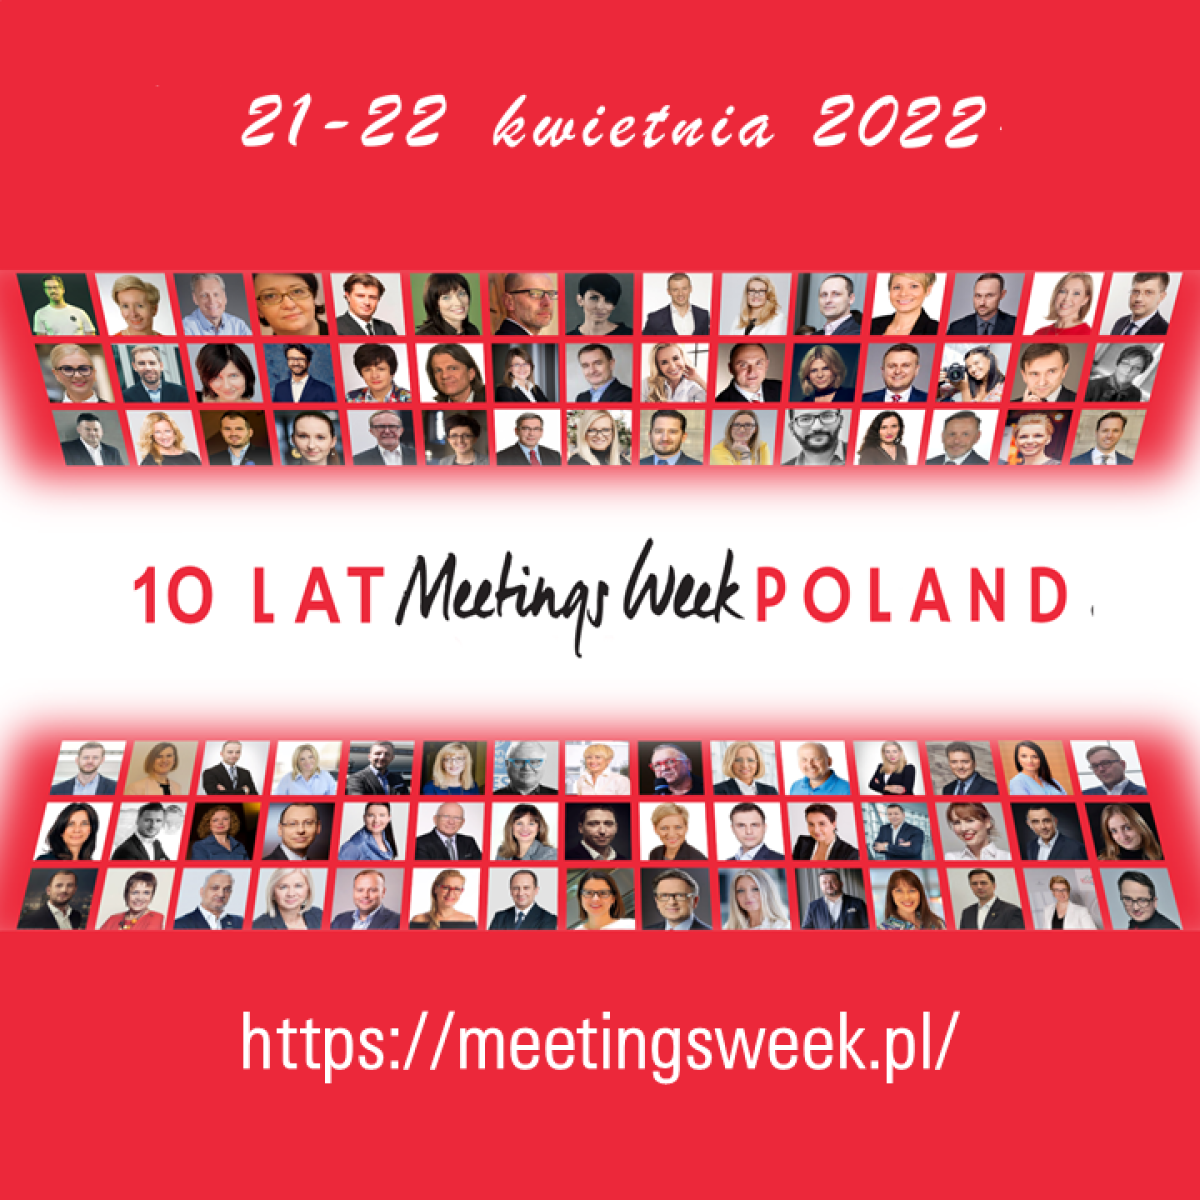 10 LAT MEETINGS WEEK POLAND 